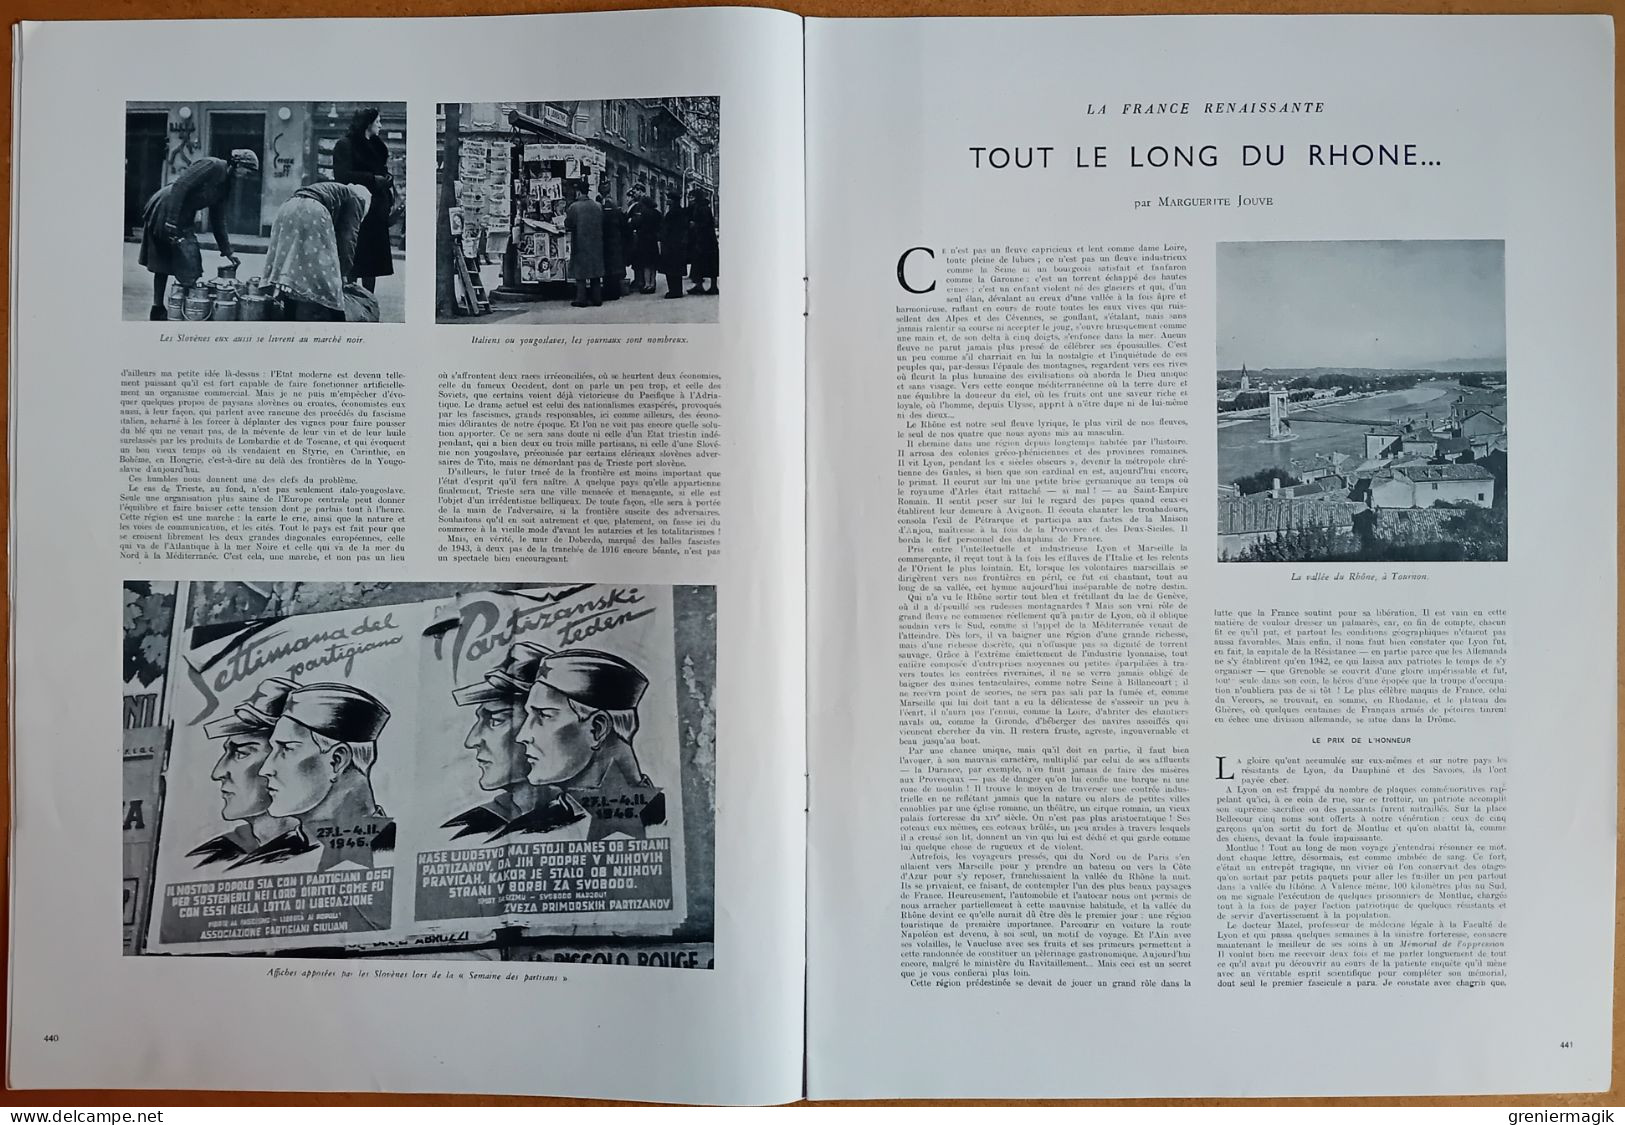 France Illustration N°30 27/04/1946 Trieste/Les Sao du Tchad/Le long du Rhône/Attaque du Courrier de Lyon/Ondes courtes